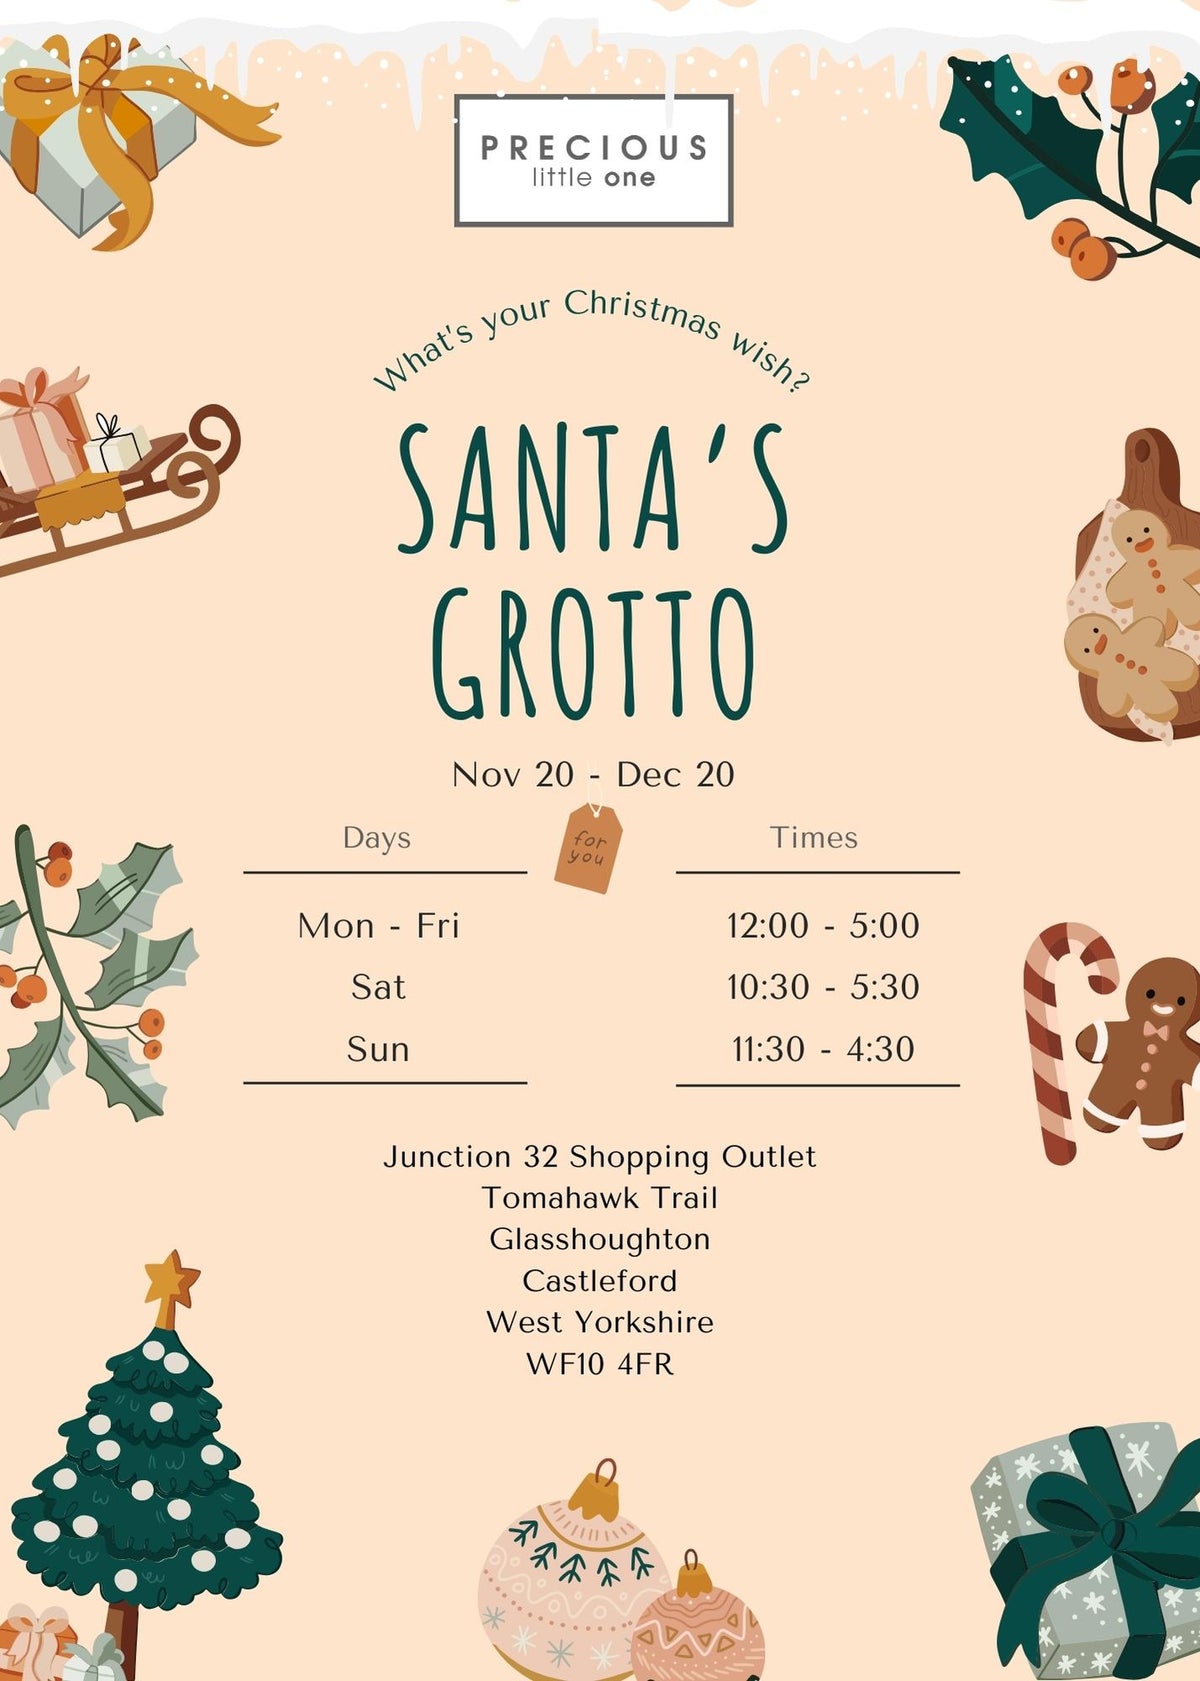 Santas Grotto Tickets